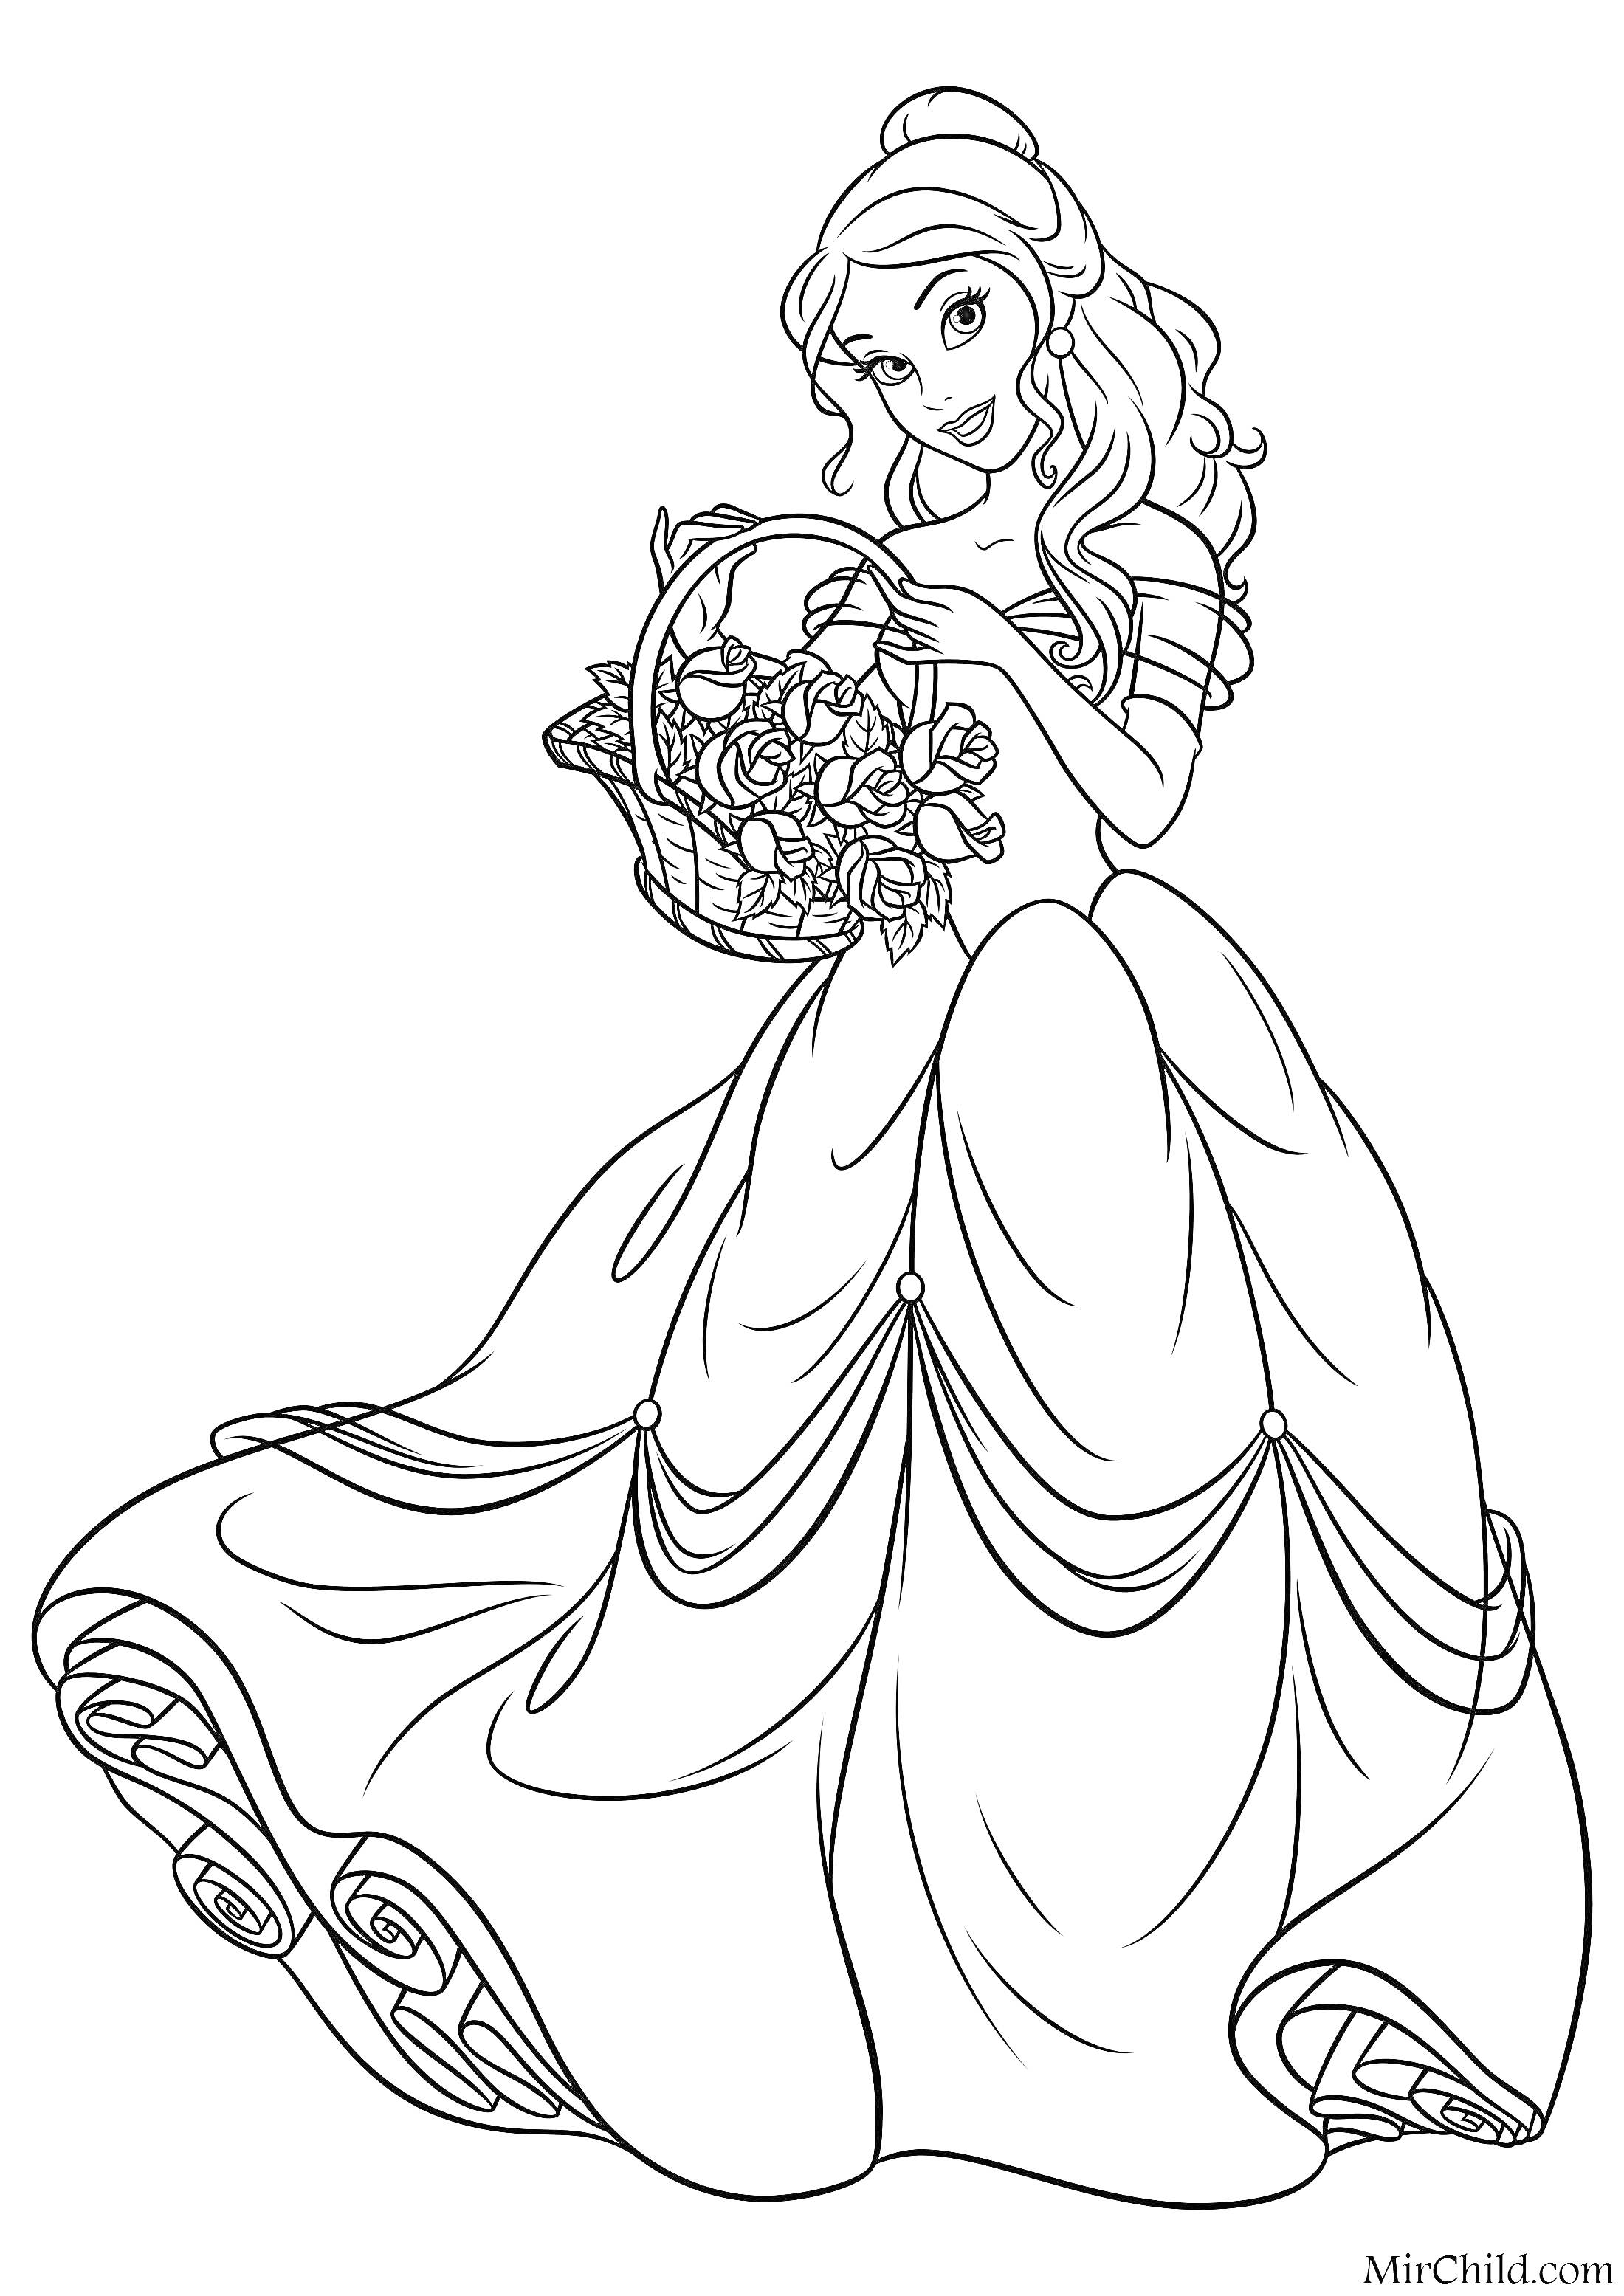 Раскраска Принцесса с длинными волосами, держащая корзину с цветами, в пышном платье